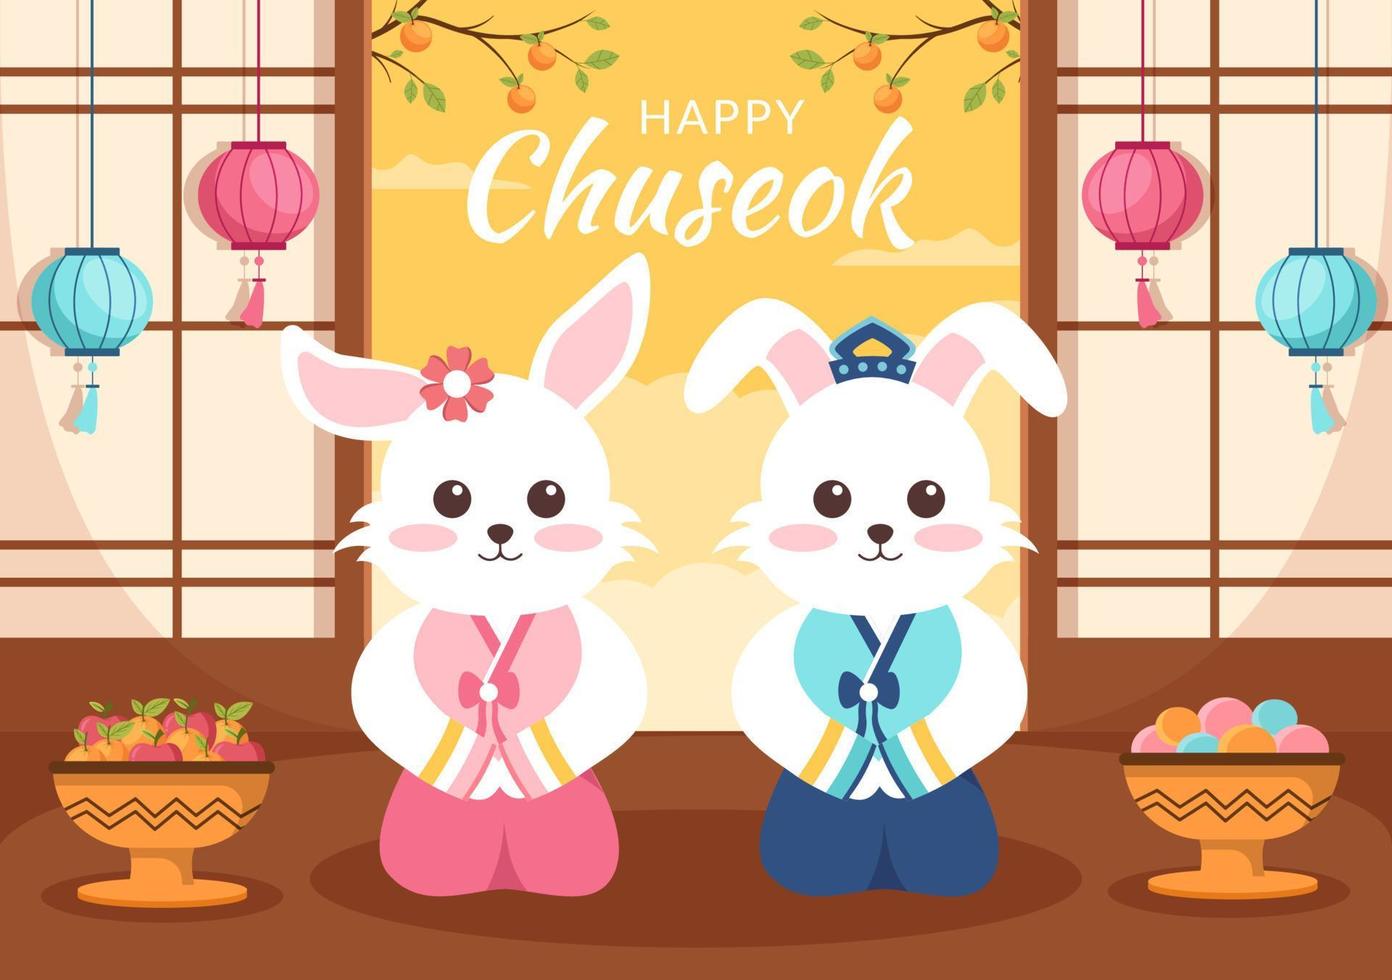 feliz dia de chuseok na coreia para ação de graças com personagem de coelho fofo no tradicional hanbok, lua cheia e paisagem do céu em ilustração plana dos desenhos animados vetor